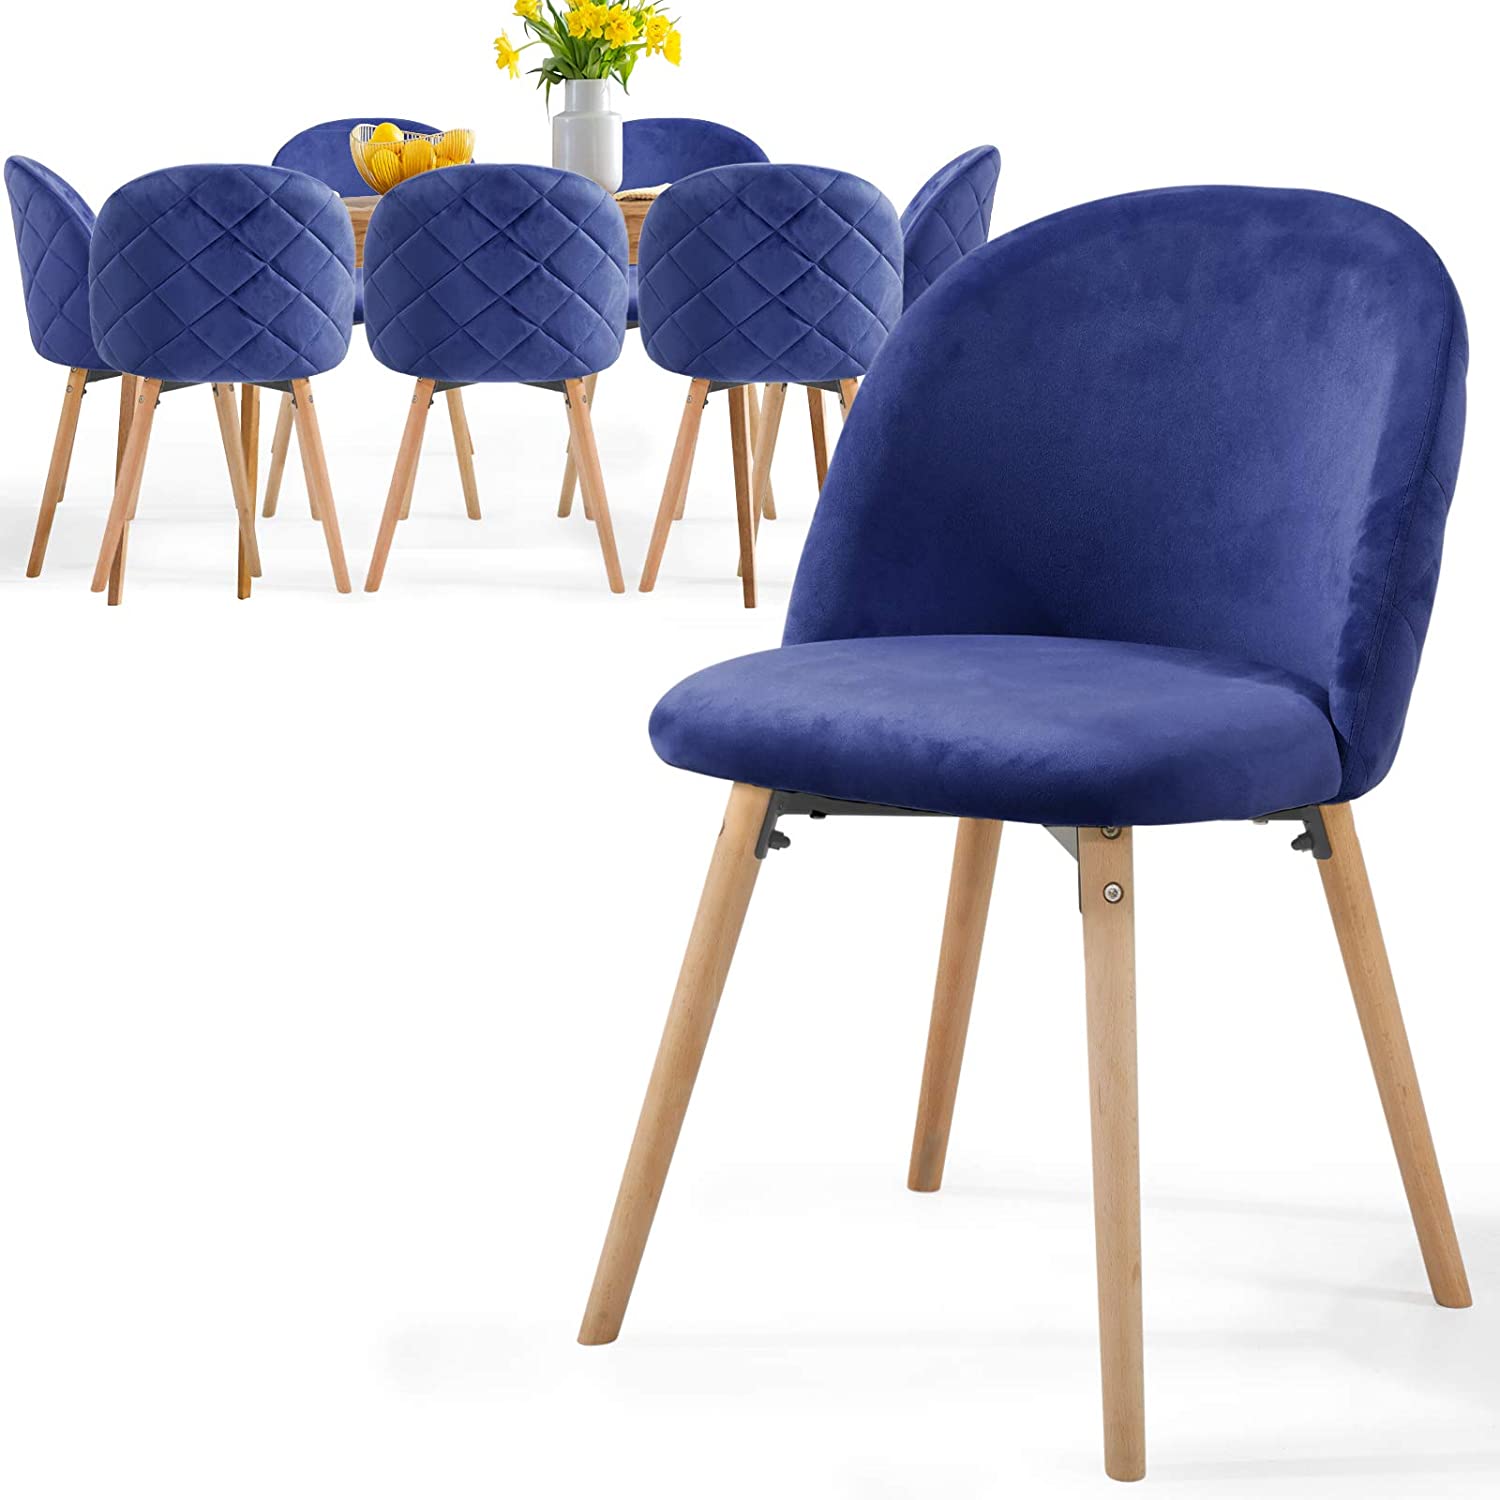 Eetkamerstoelen – Lounge stoelen – Scandinavisch – Retro – Vintage – Gestoffeerd – Set van 8 – Blauw